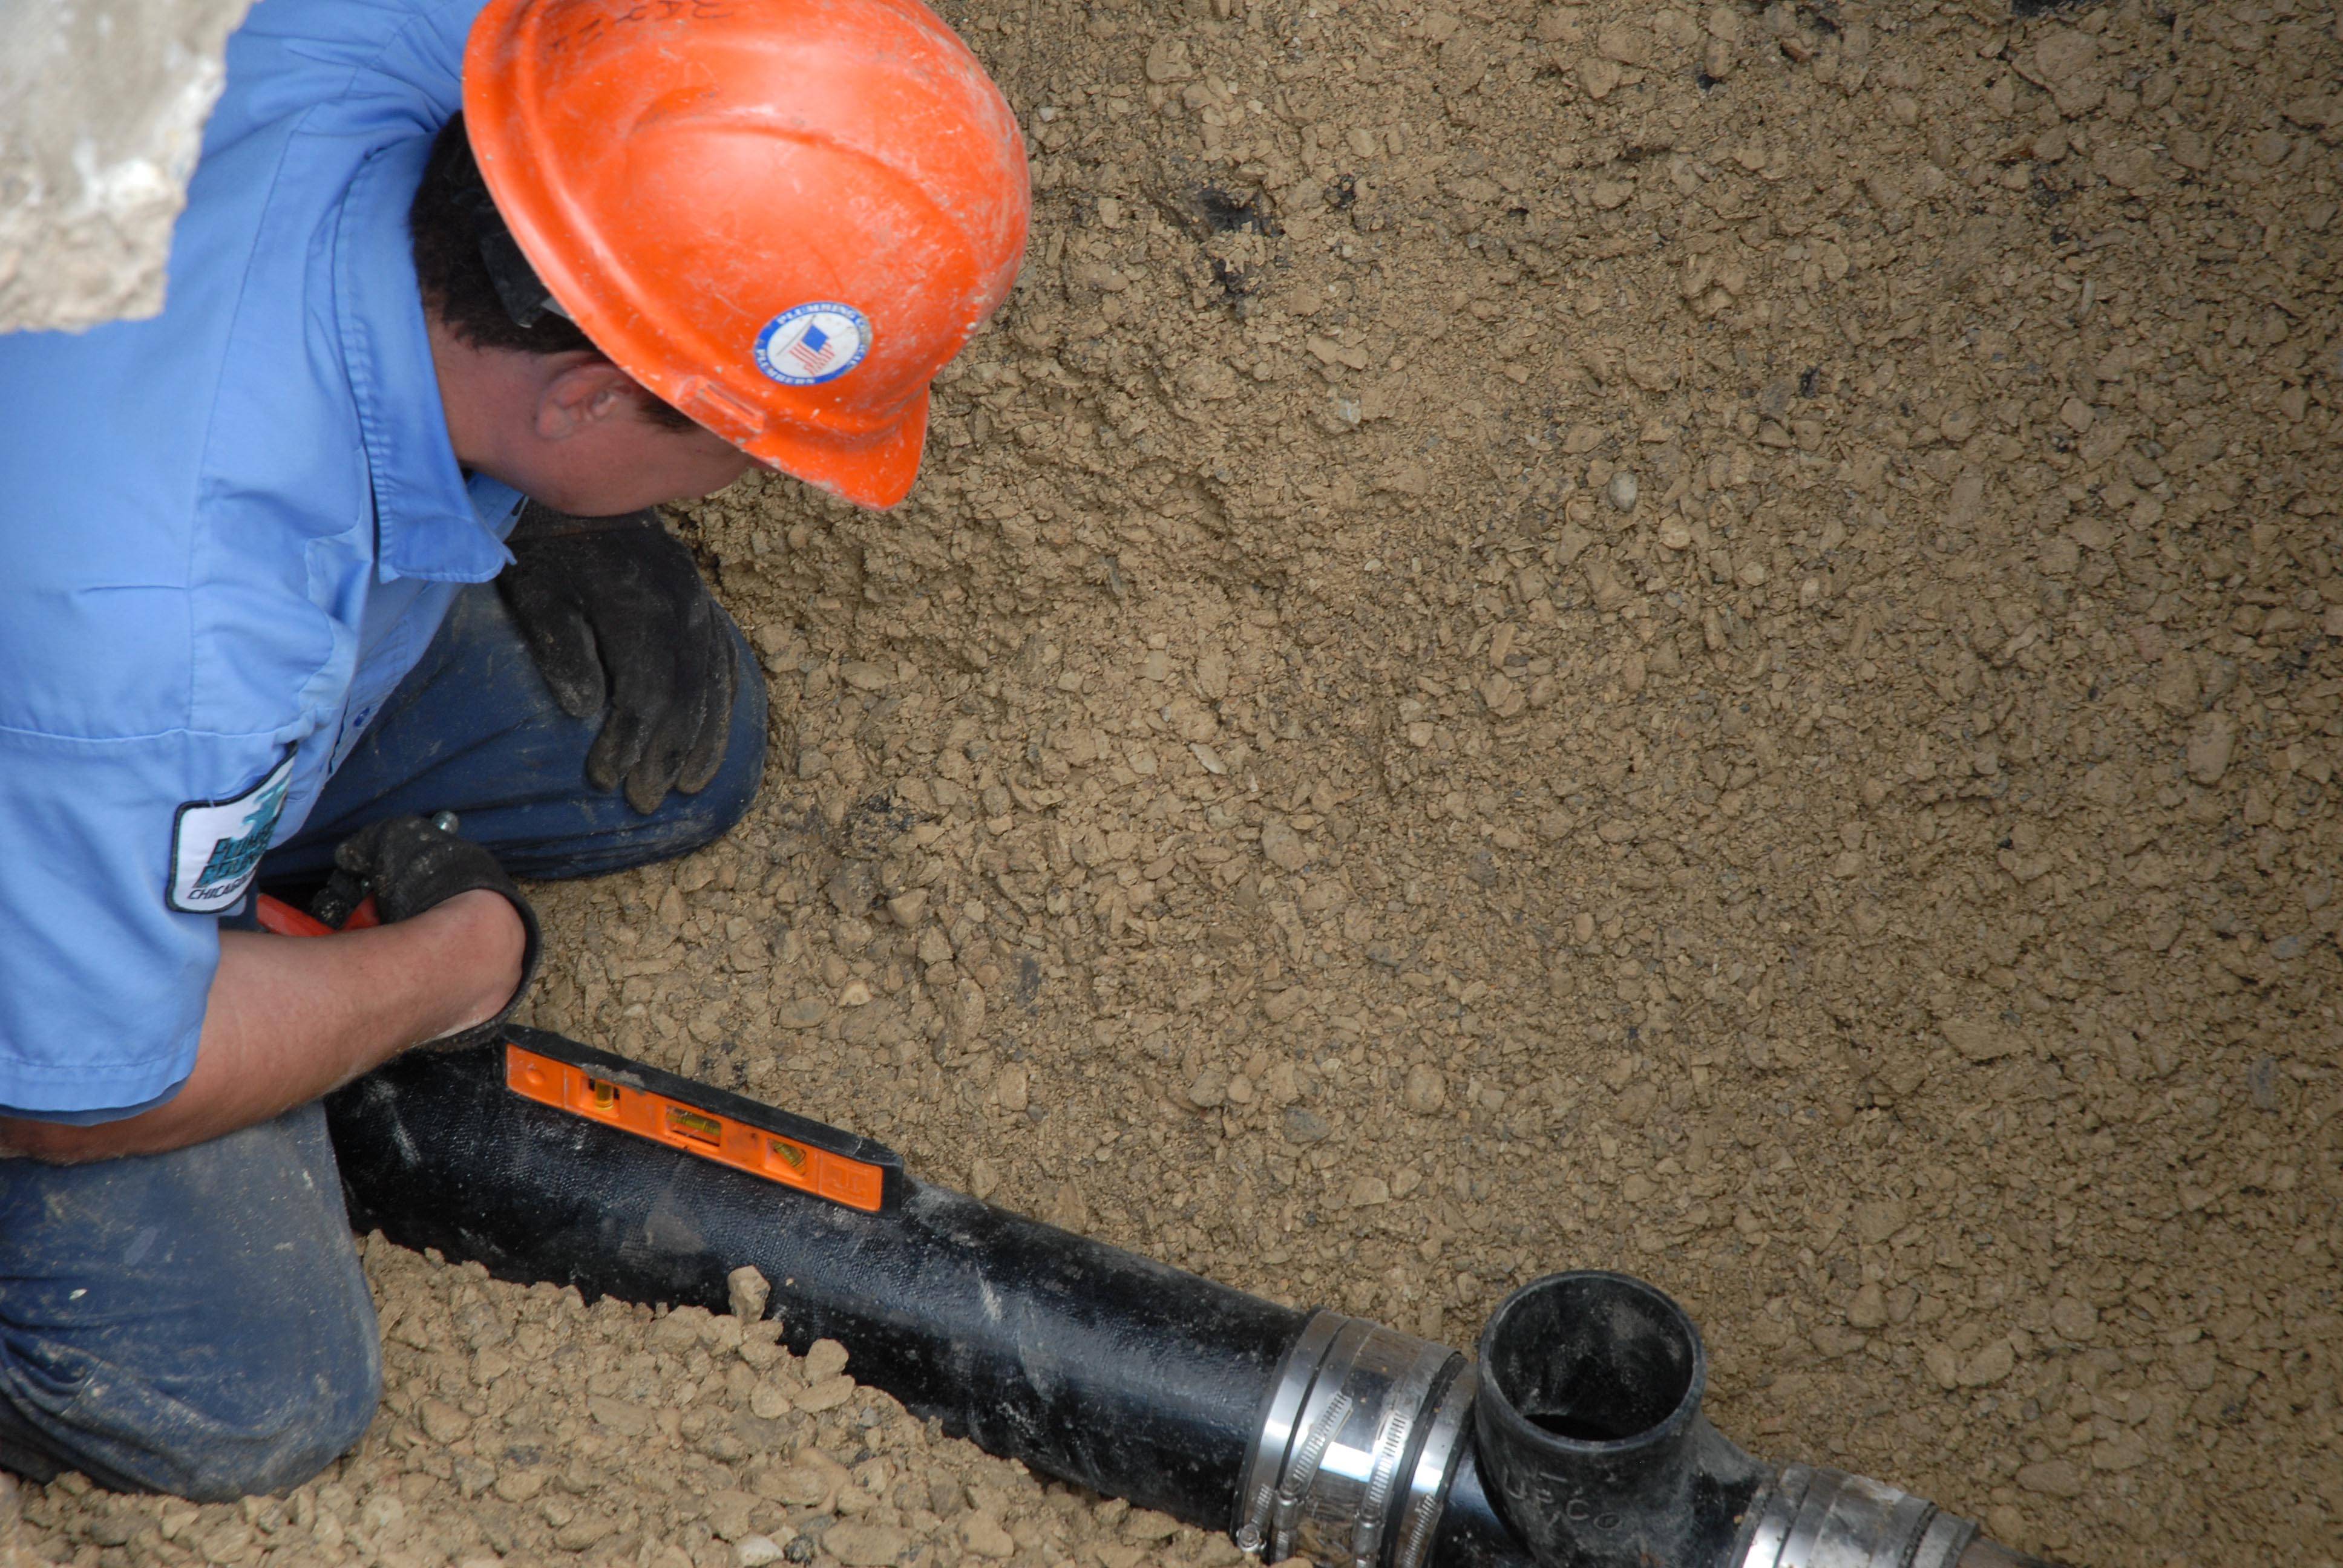 Монтаж систем водоснабжения и канализации: требования, материалы и этапы работ